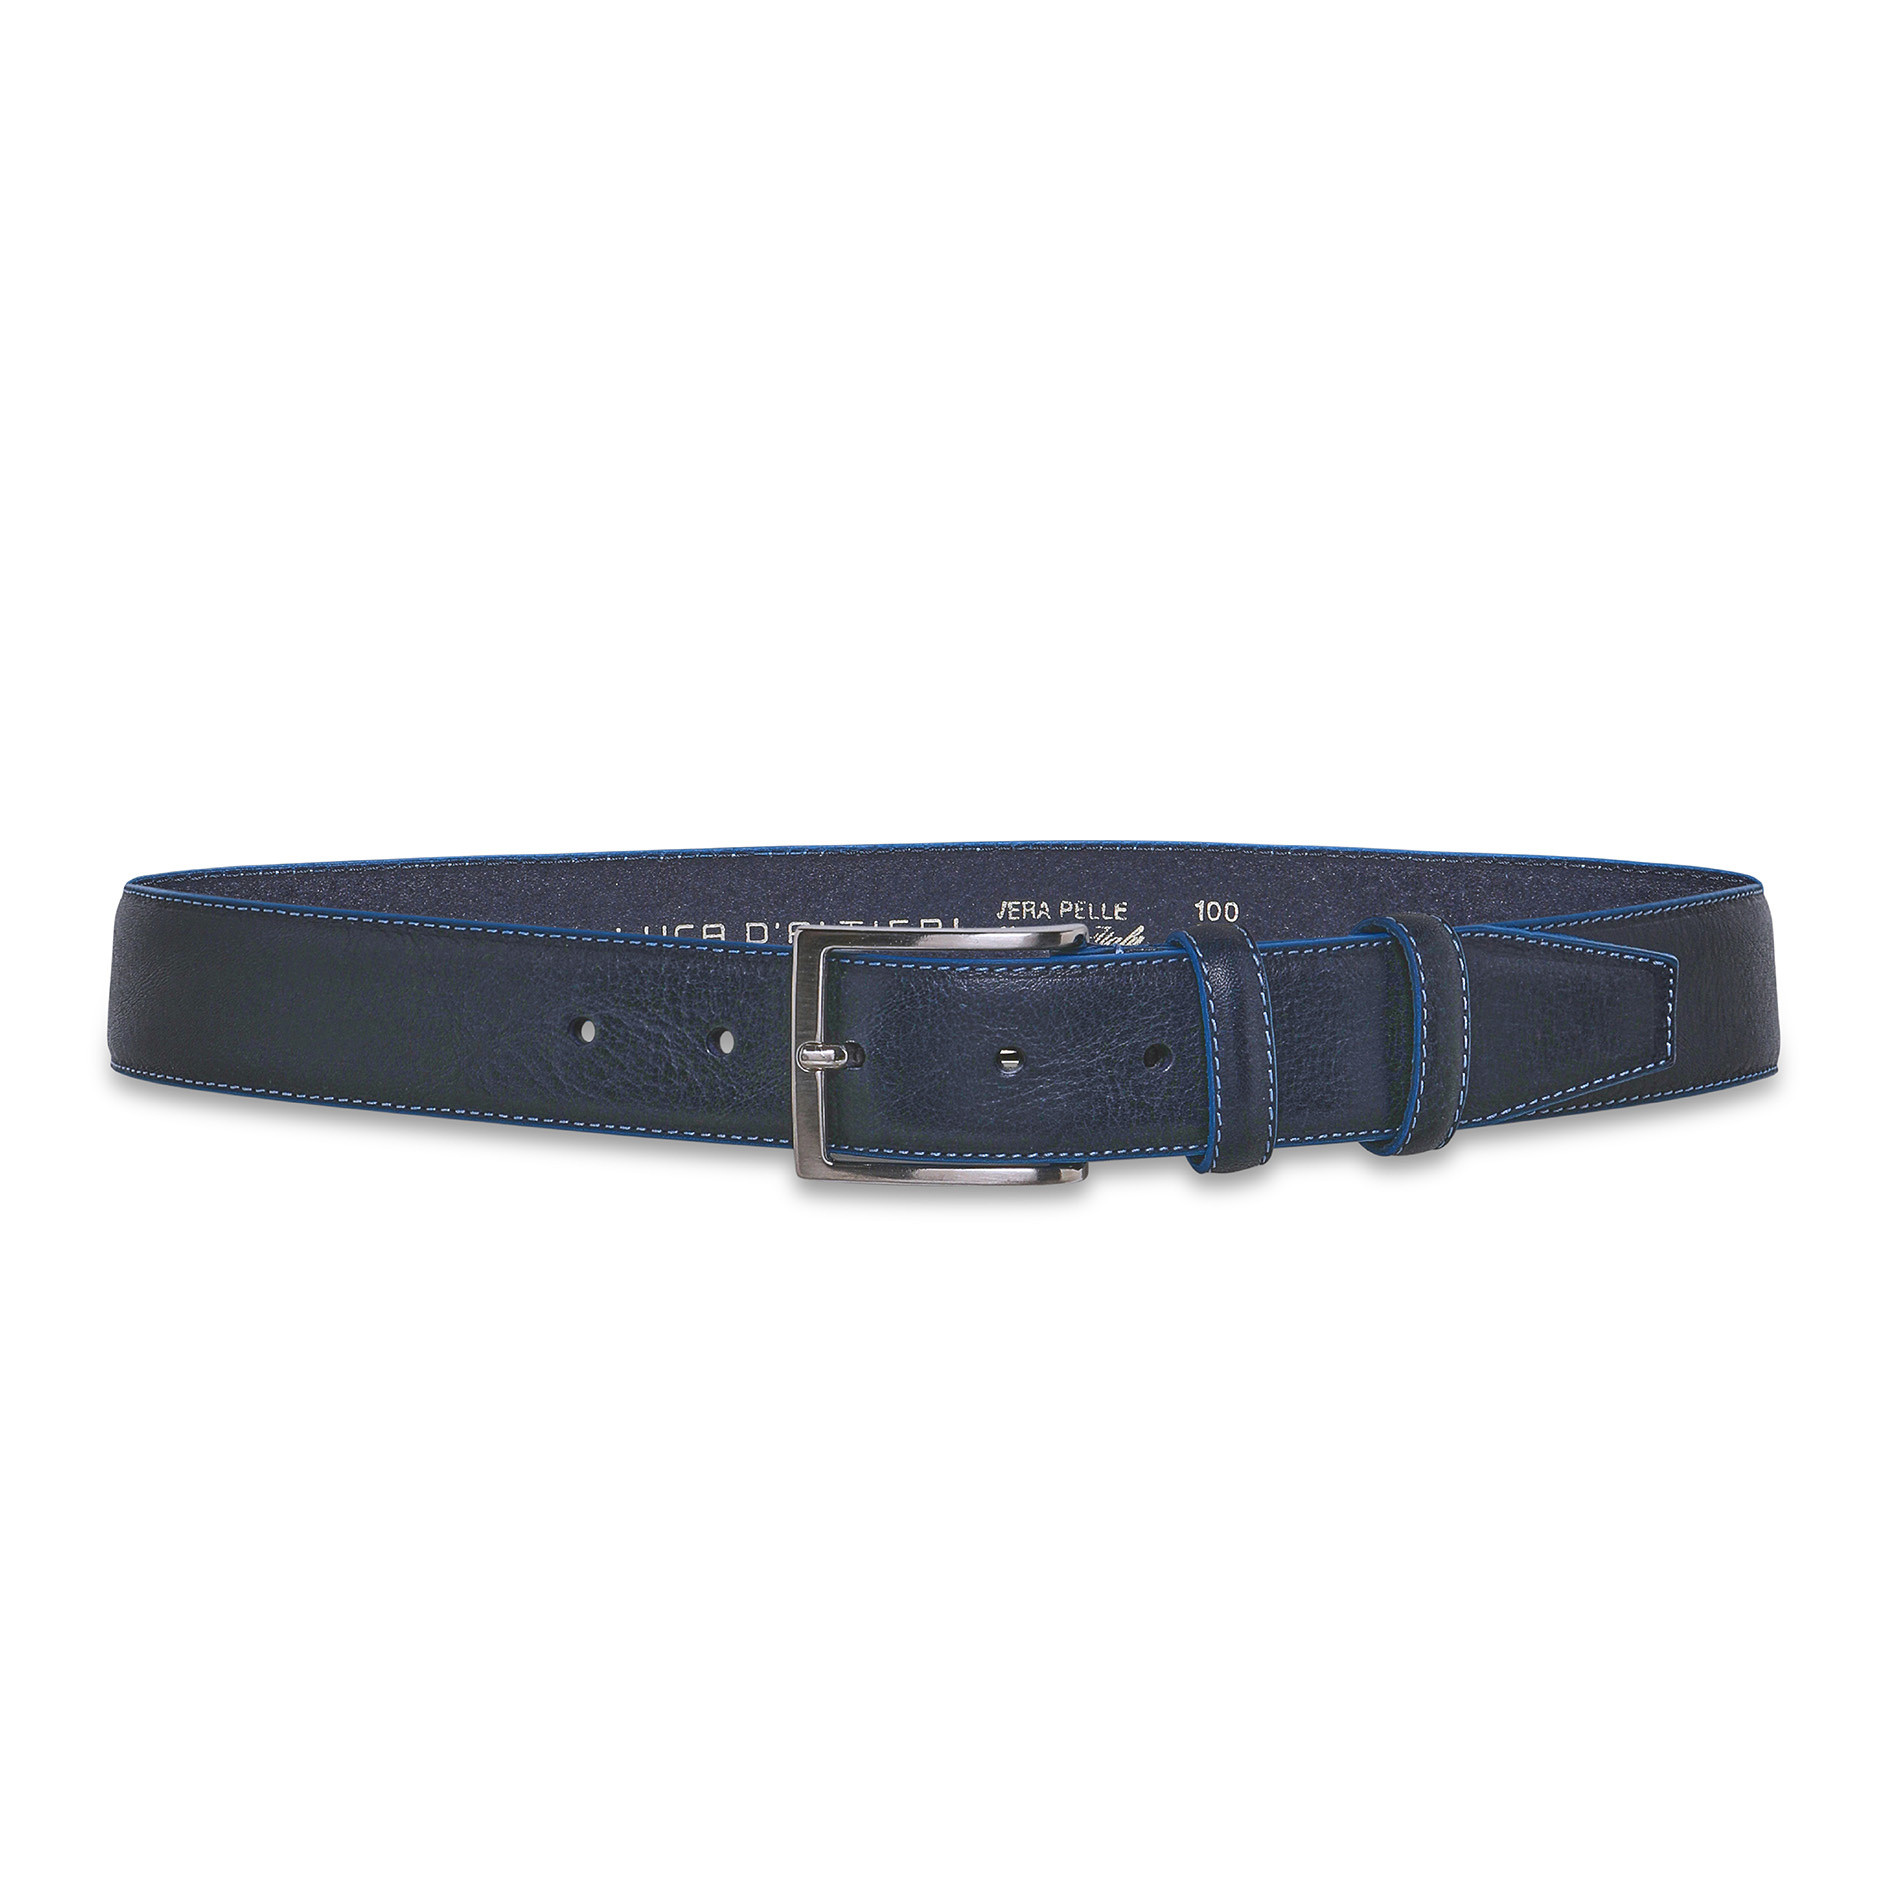 Cintura vera pelle Luca D'Altieri, Blu scuro, large